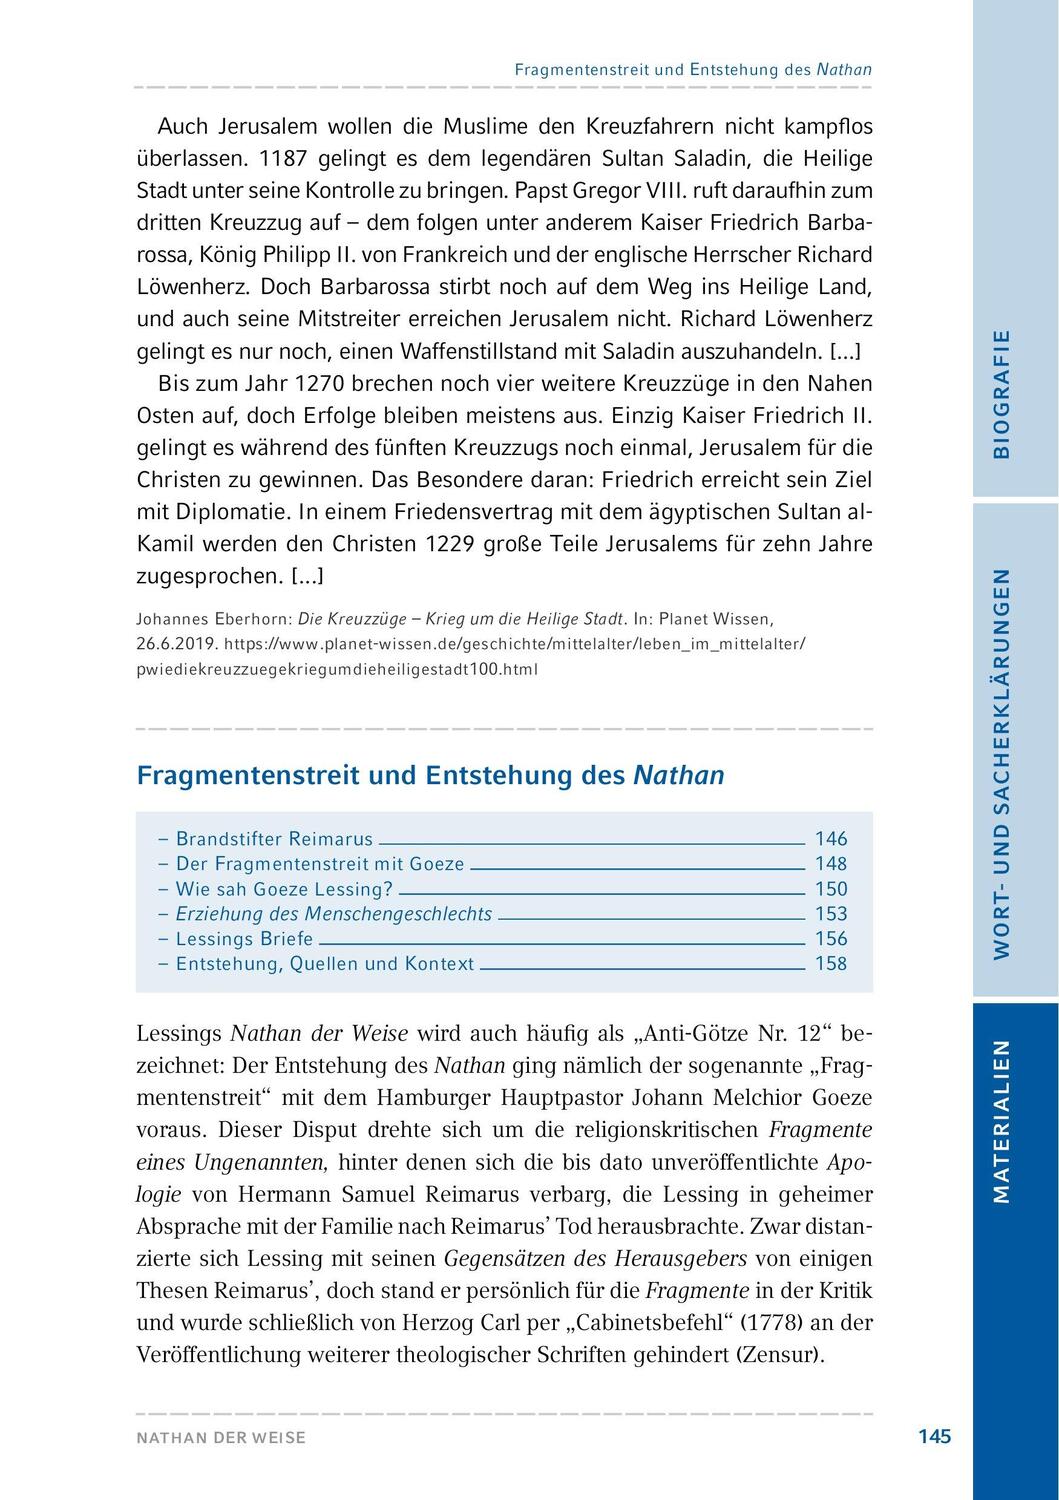 Bild: 9783804425958 | Nathan der Weise | Hamburger Leseheft plus Königs Materialien | Buch